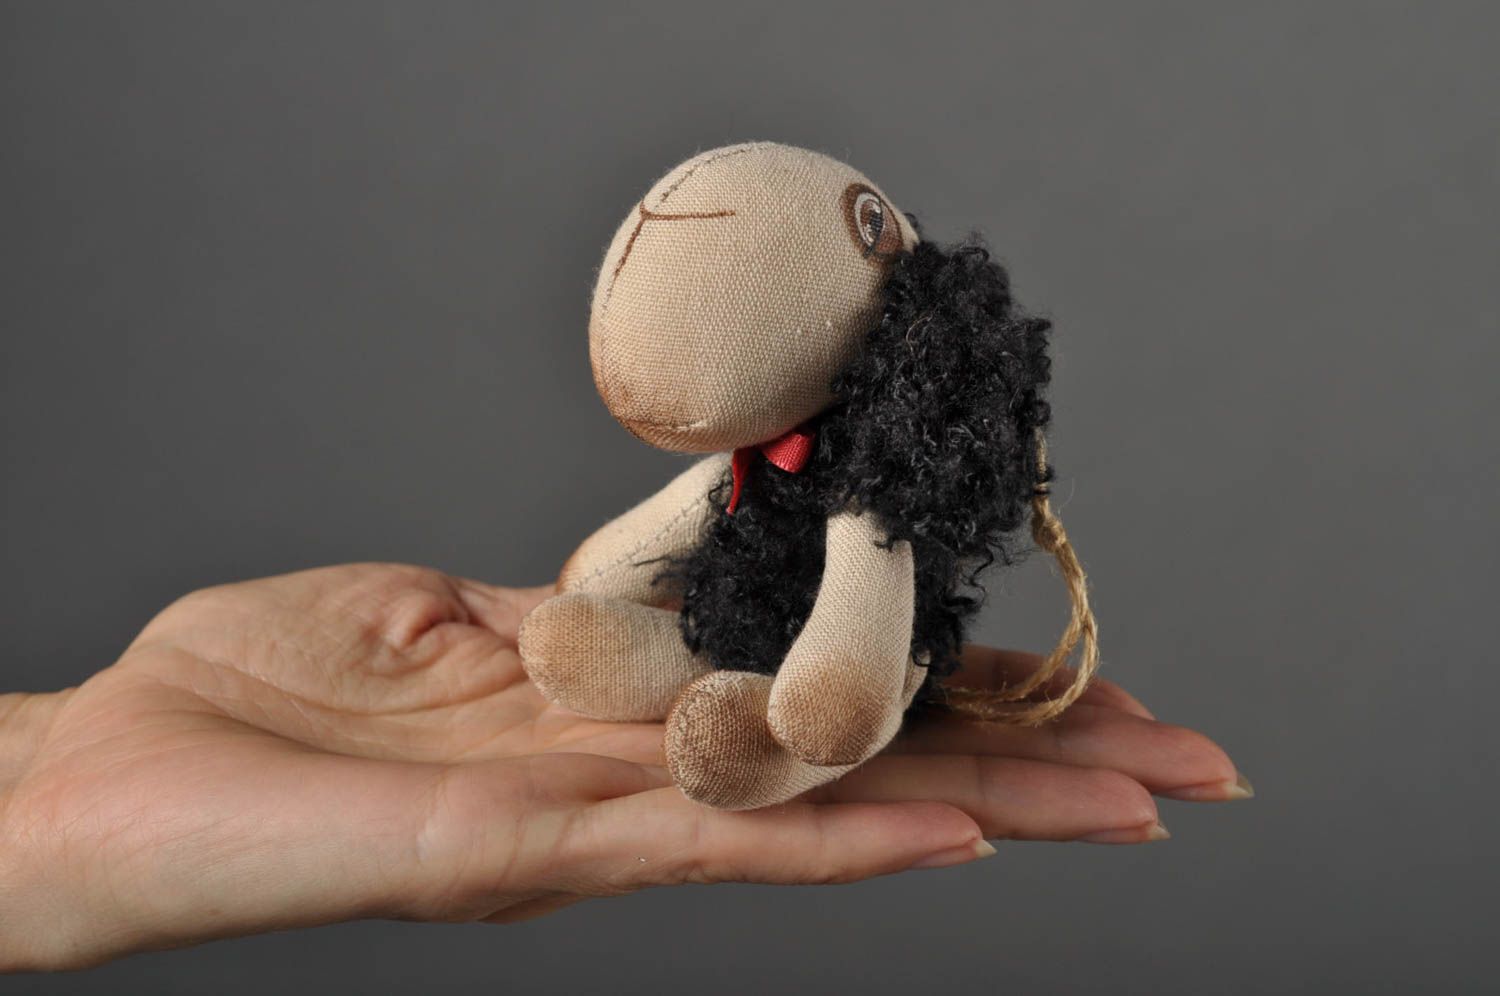 Игрушка овечка ручной работы детская игрушка расписанная акрилом мягкая игрушка фото 5